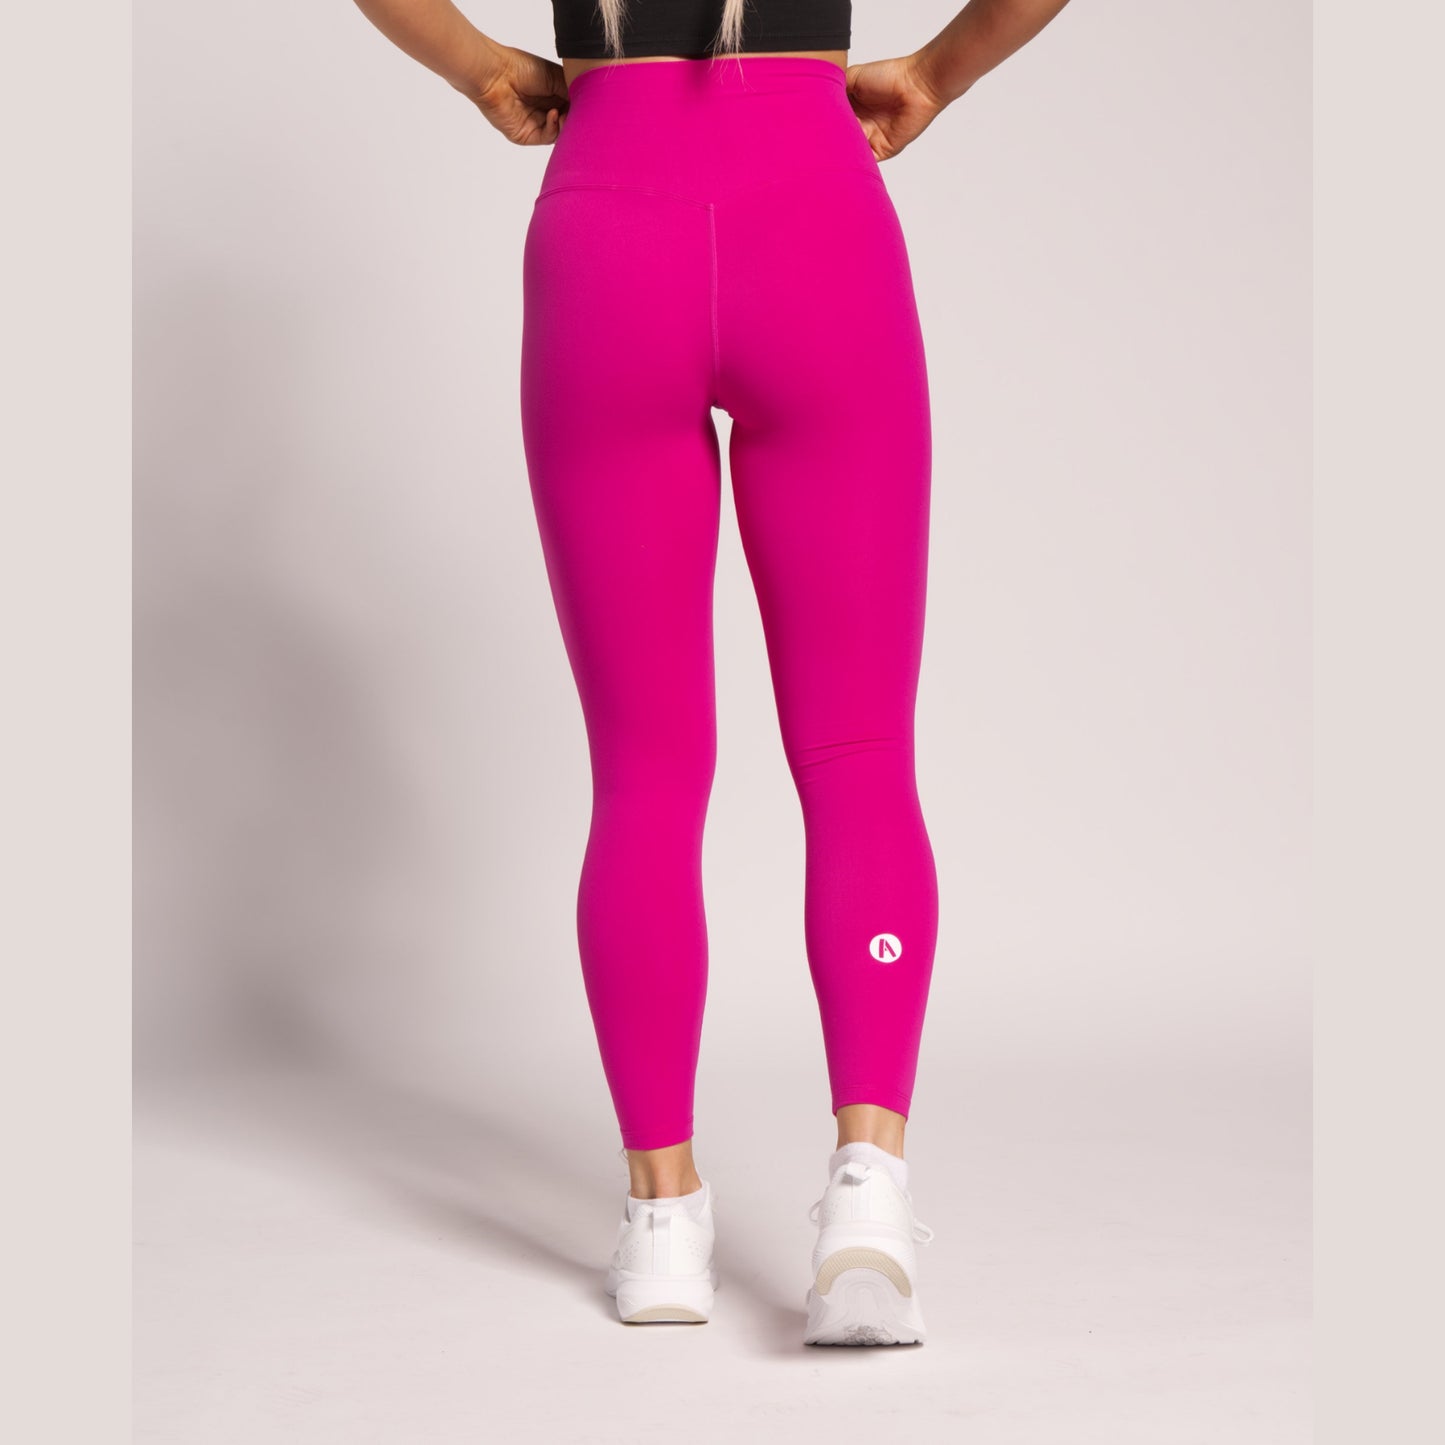 Pink leggings for women's